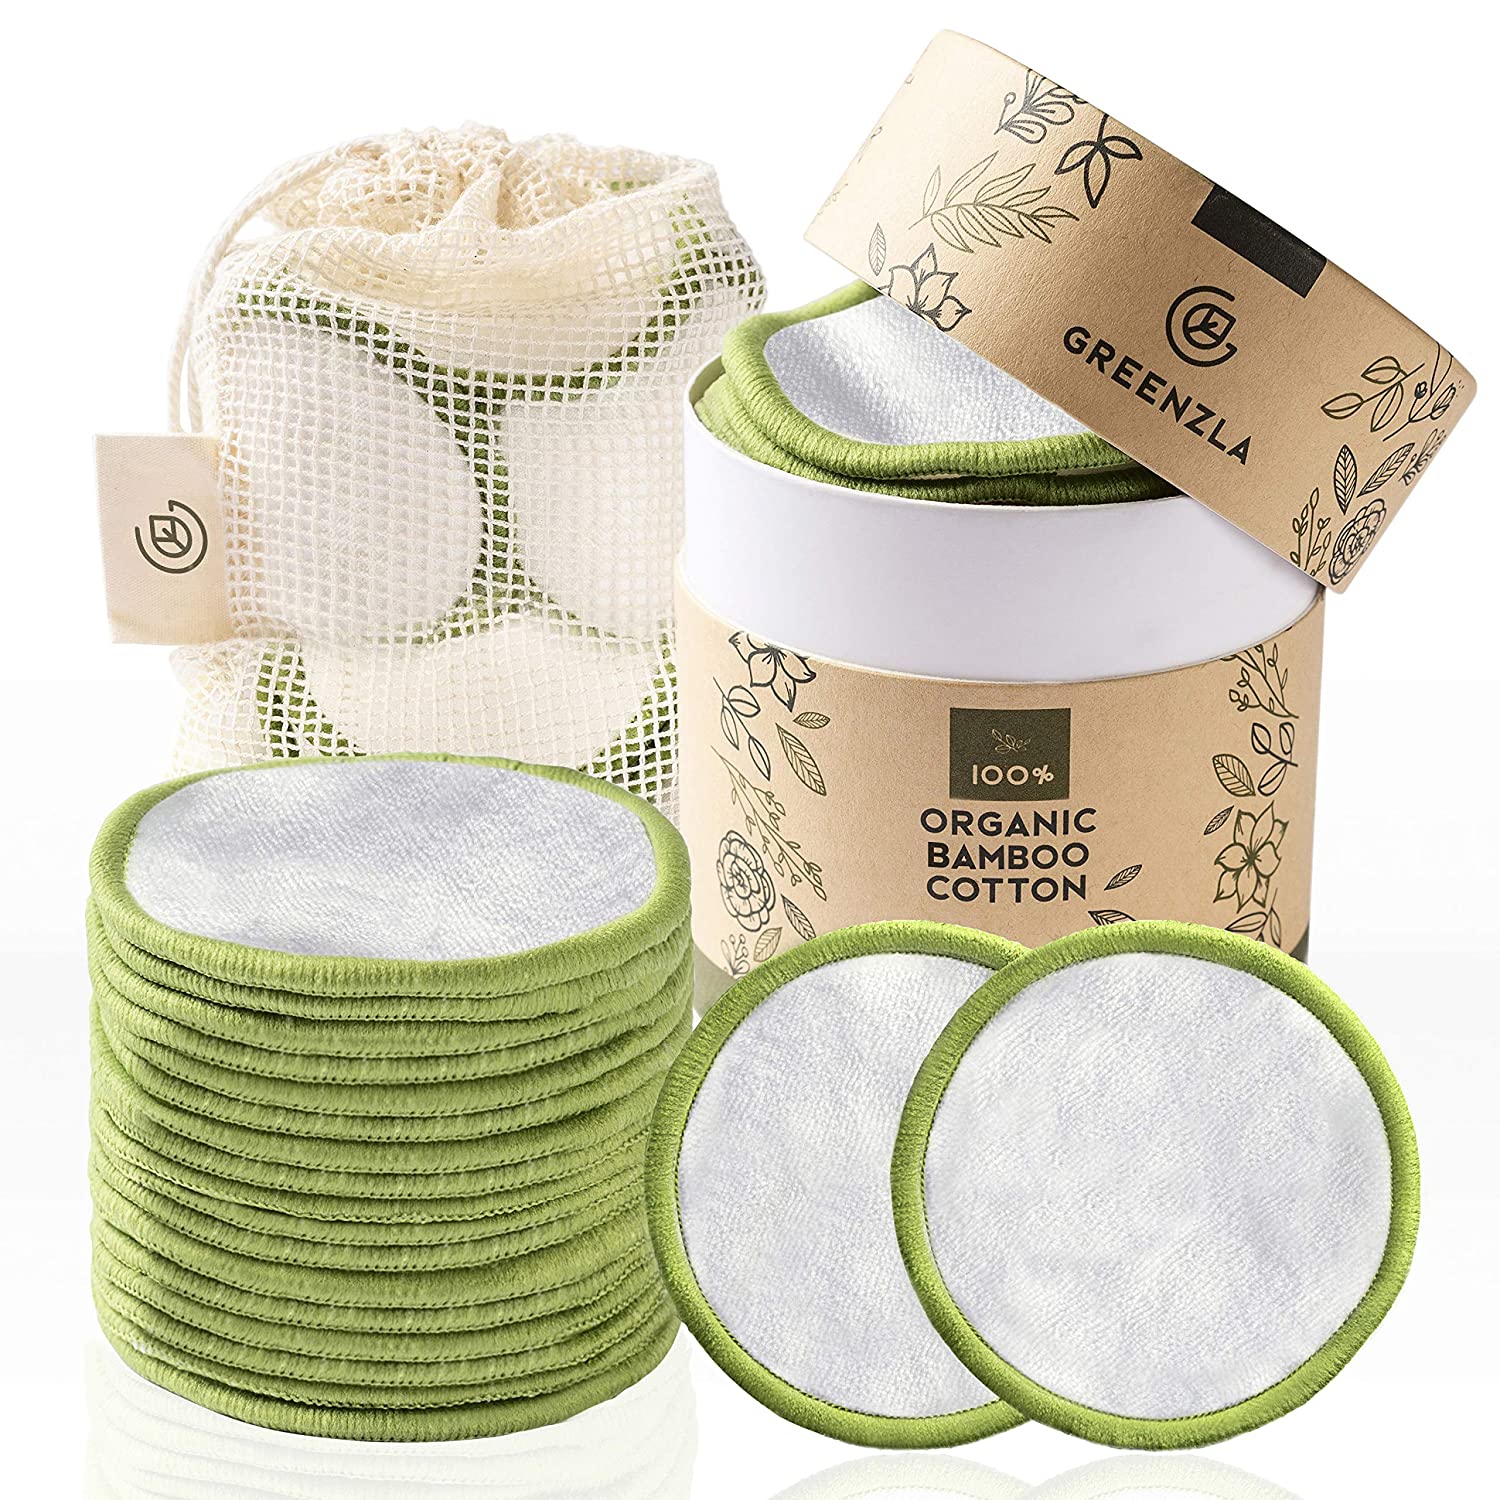 Cotton pads reusable